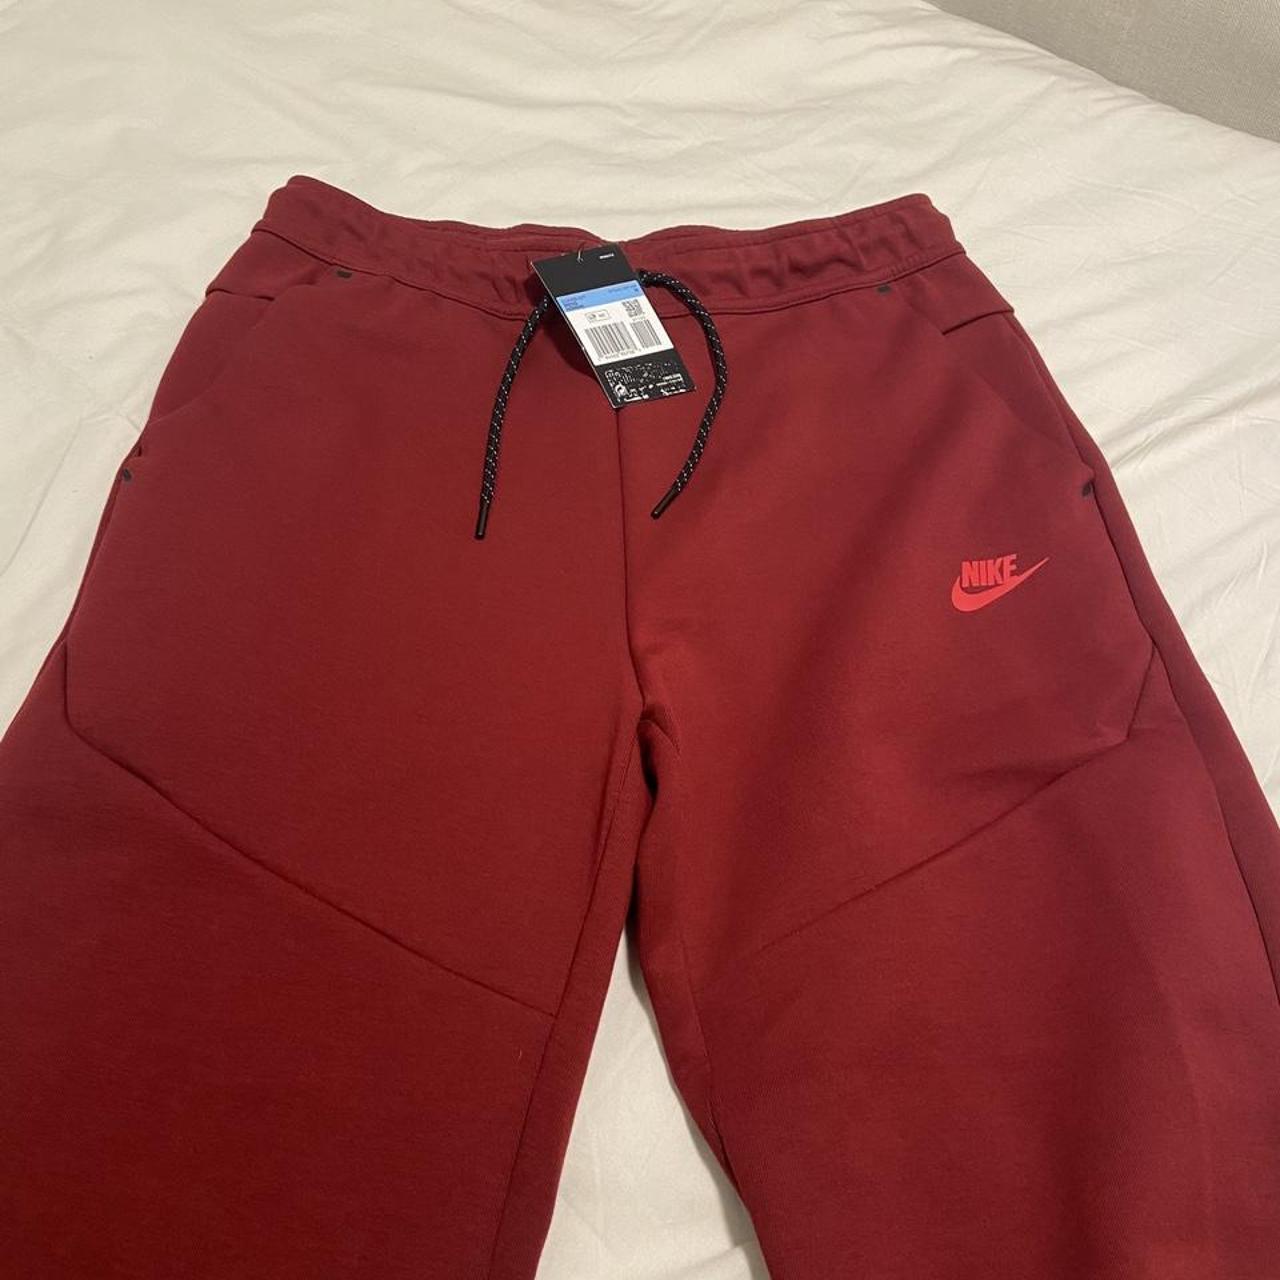 Pantalone tuta Nike tech fleece rosso bordo... - Depop